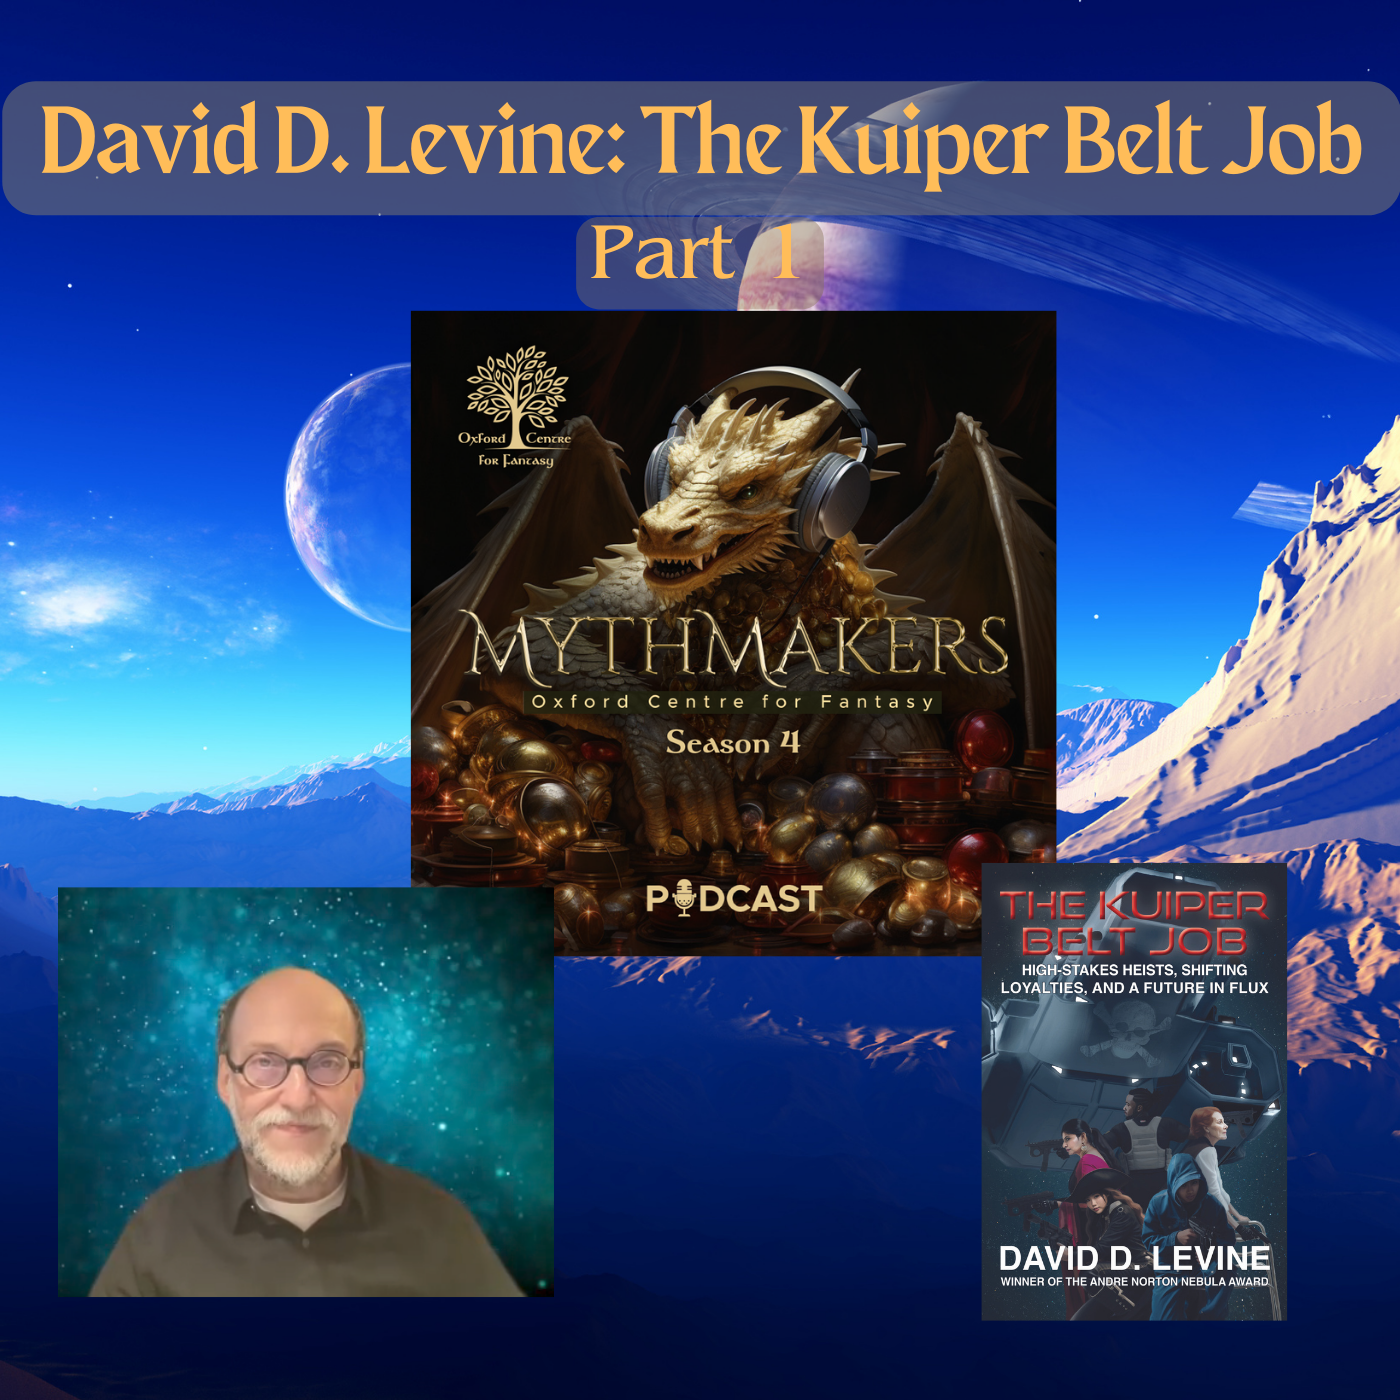 David D. Levine: The Kuiper Belt Job – Part 1